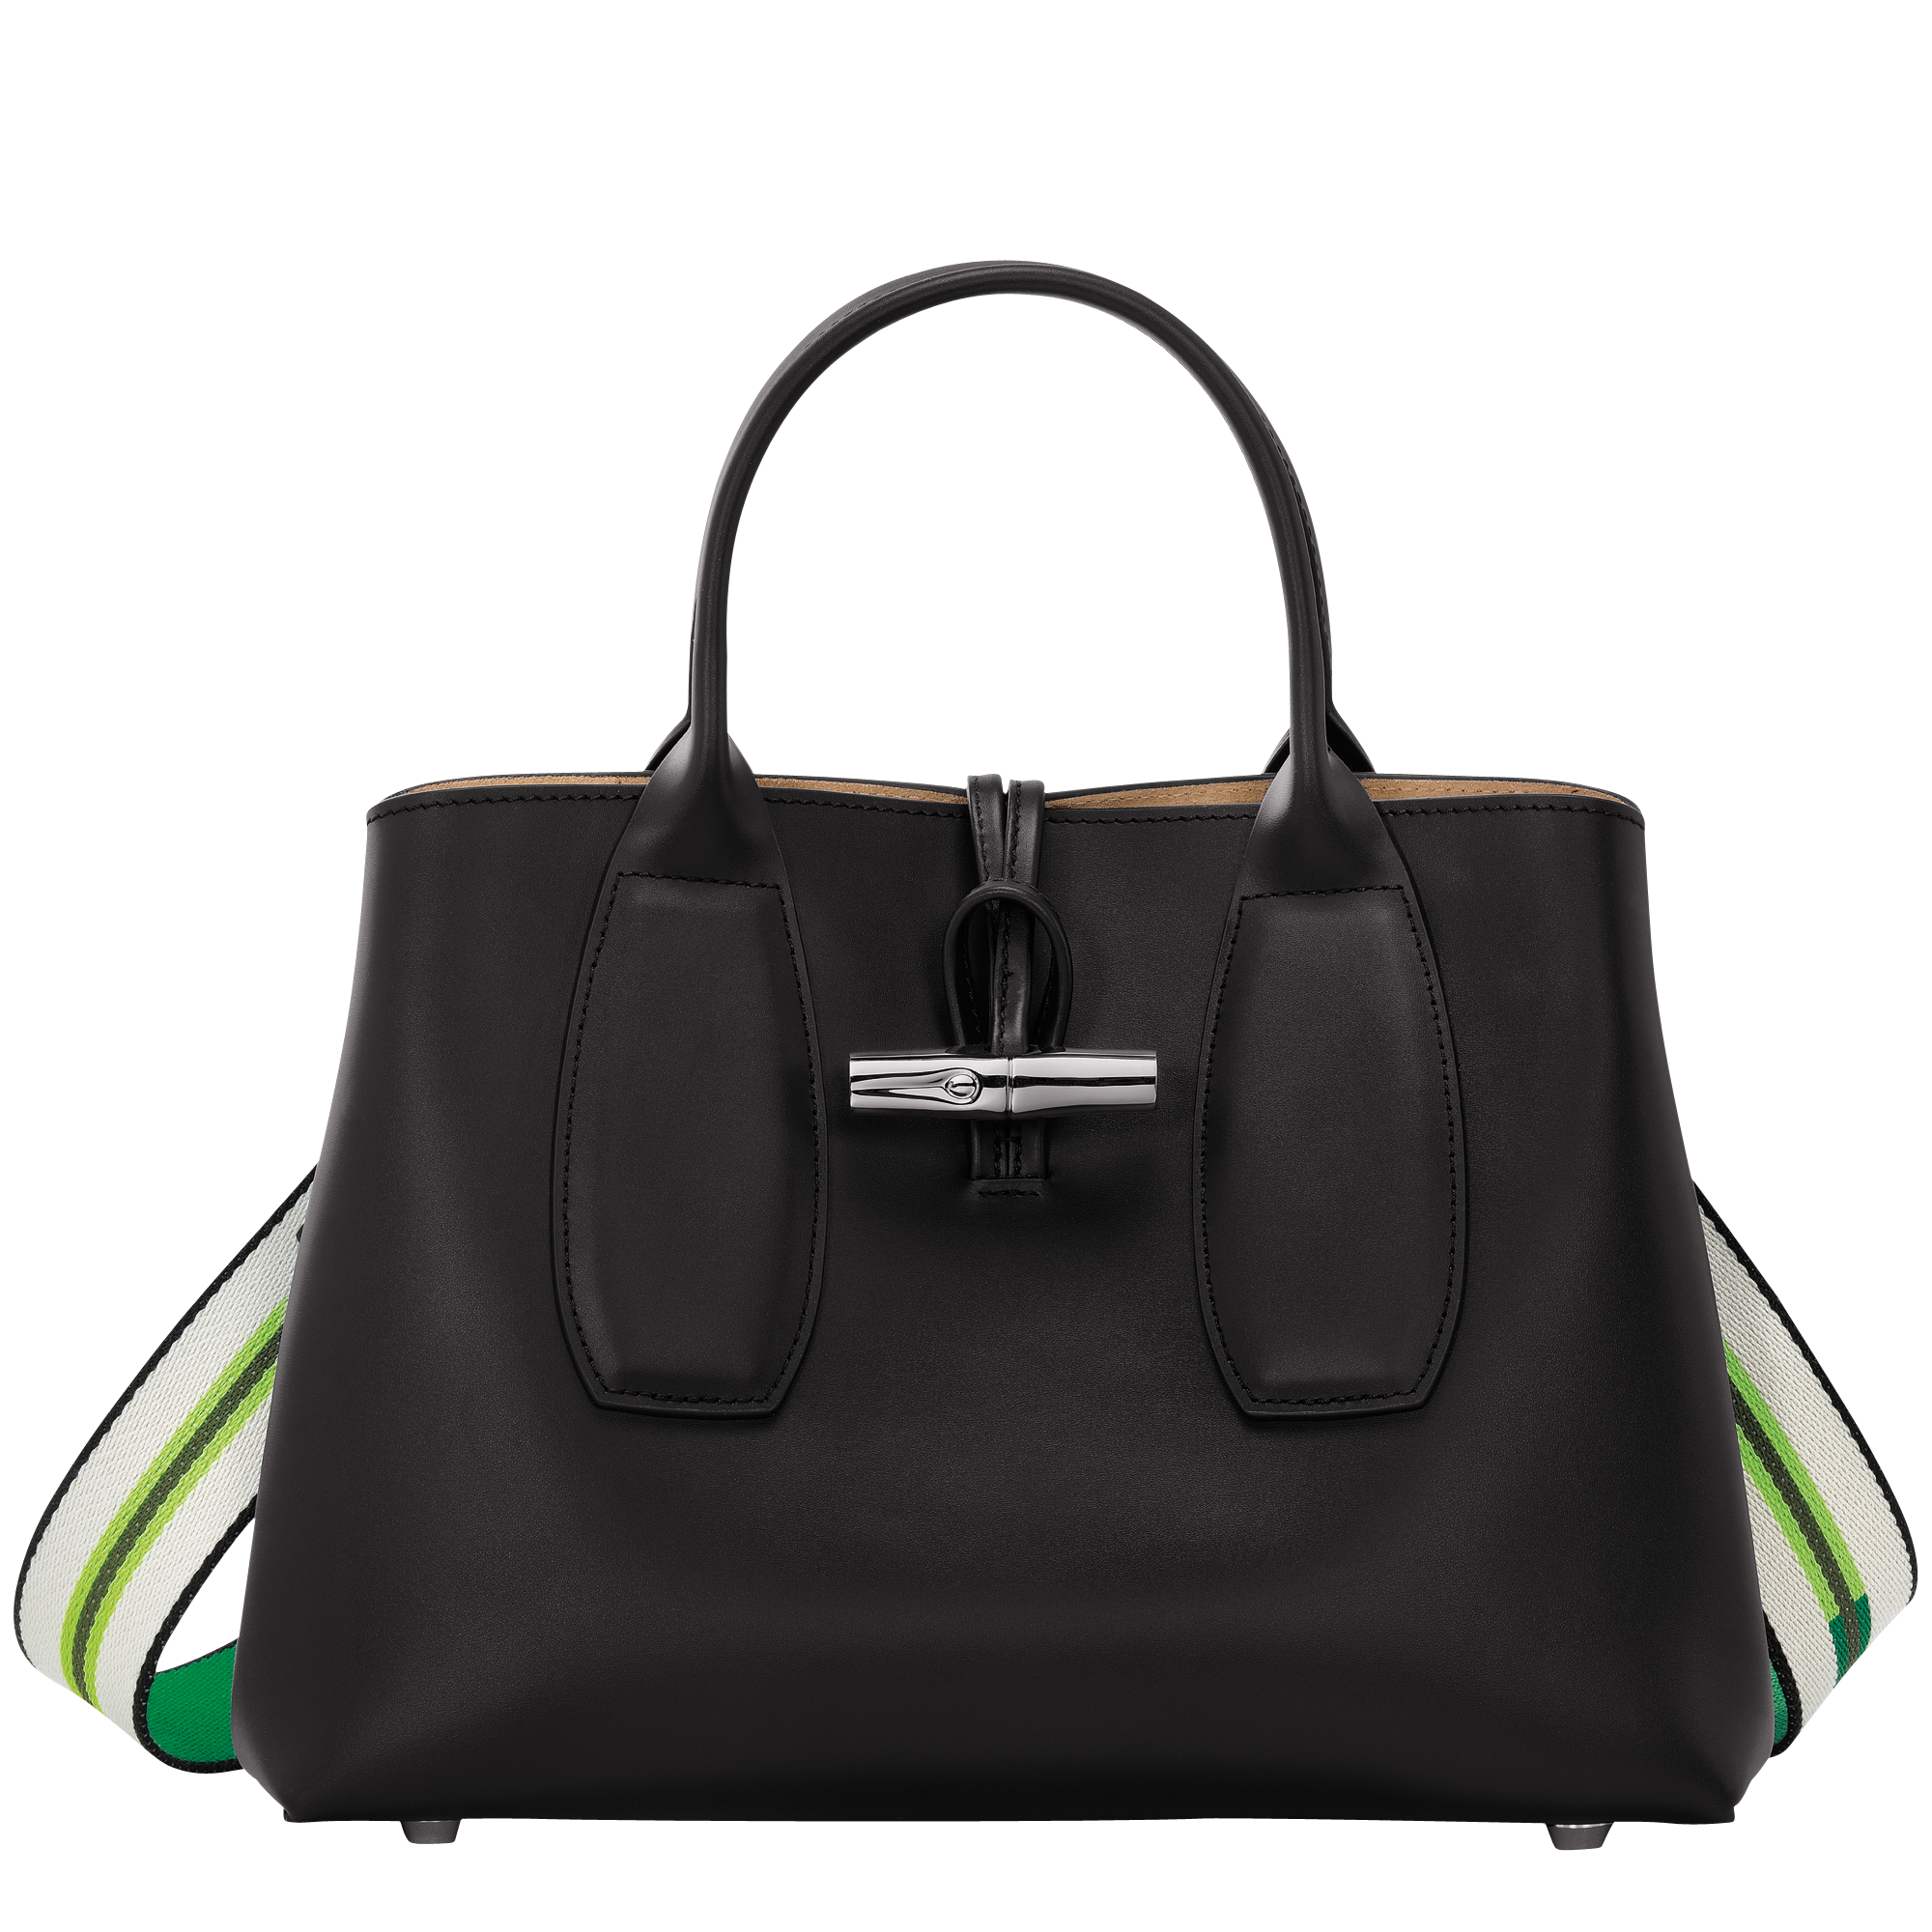 Roseau M Handbag Black - Leather (10058HPN001)